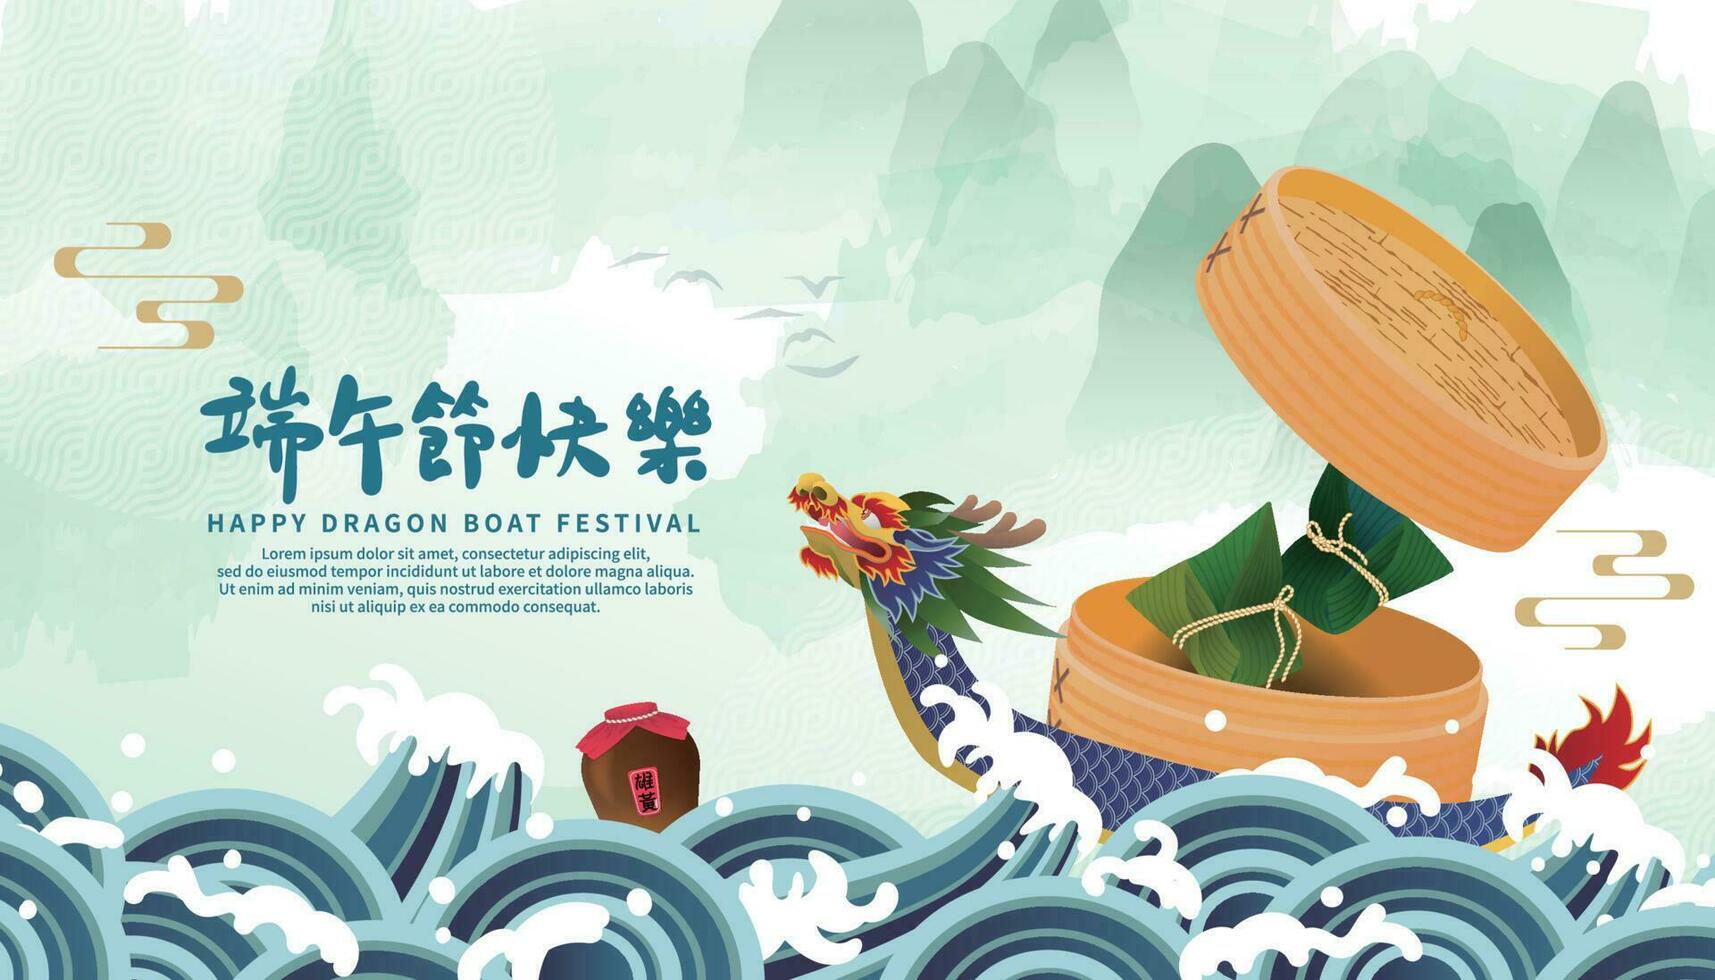 drake båt festival tema hälsning kort med drake båt och ris klimpar, kinesisk tecken för drake båt festival lyckönskningar och realgar vin vektor